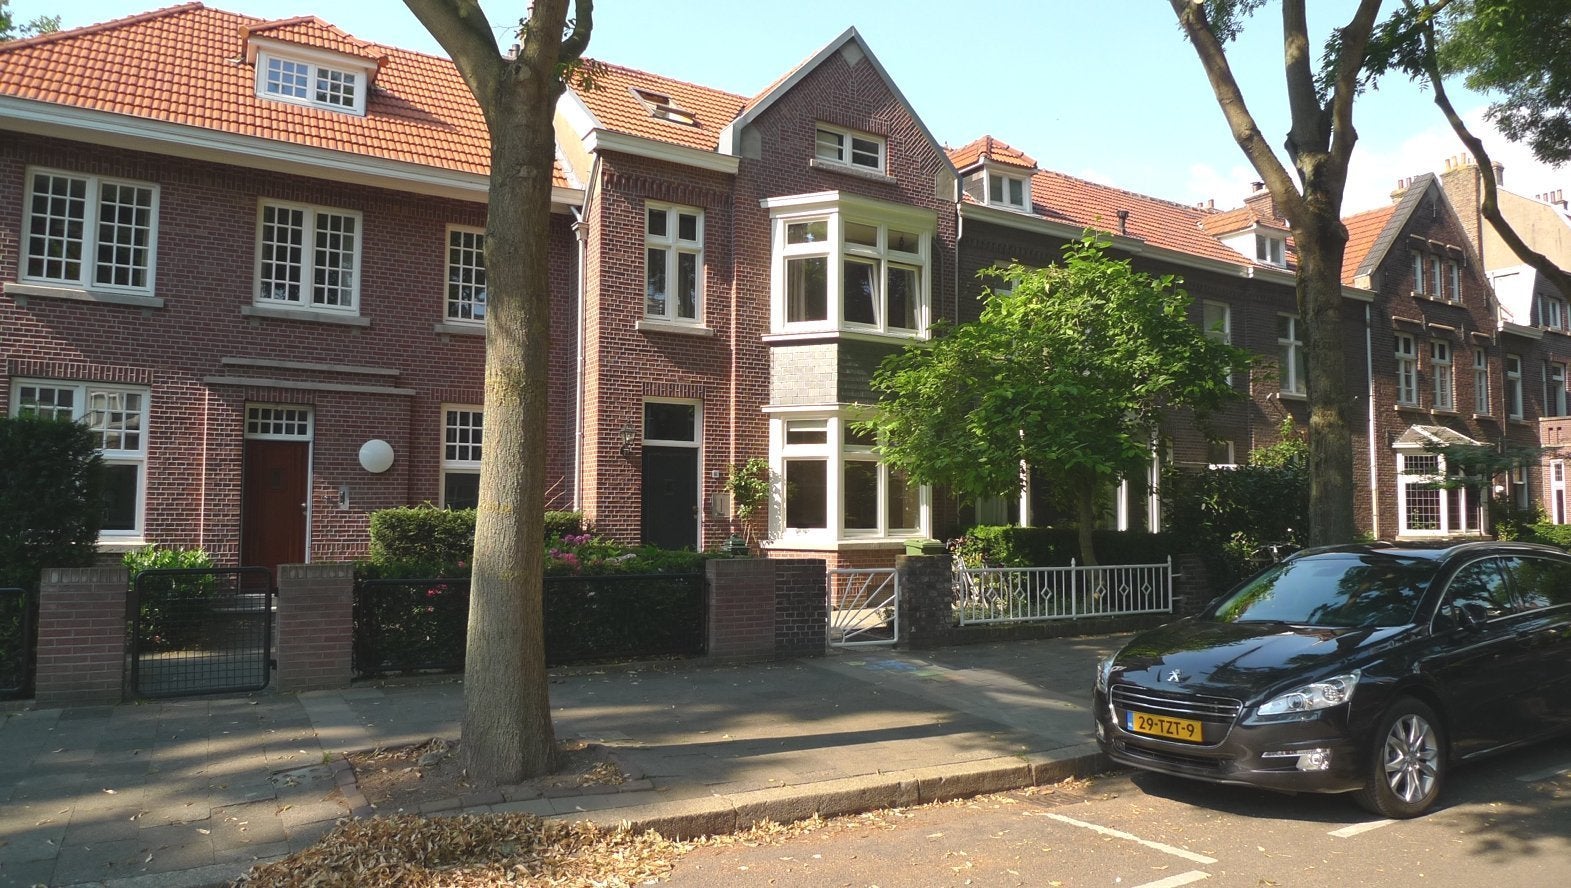 Bekijk foto 1/24 van house in Maastricht